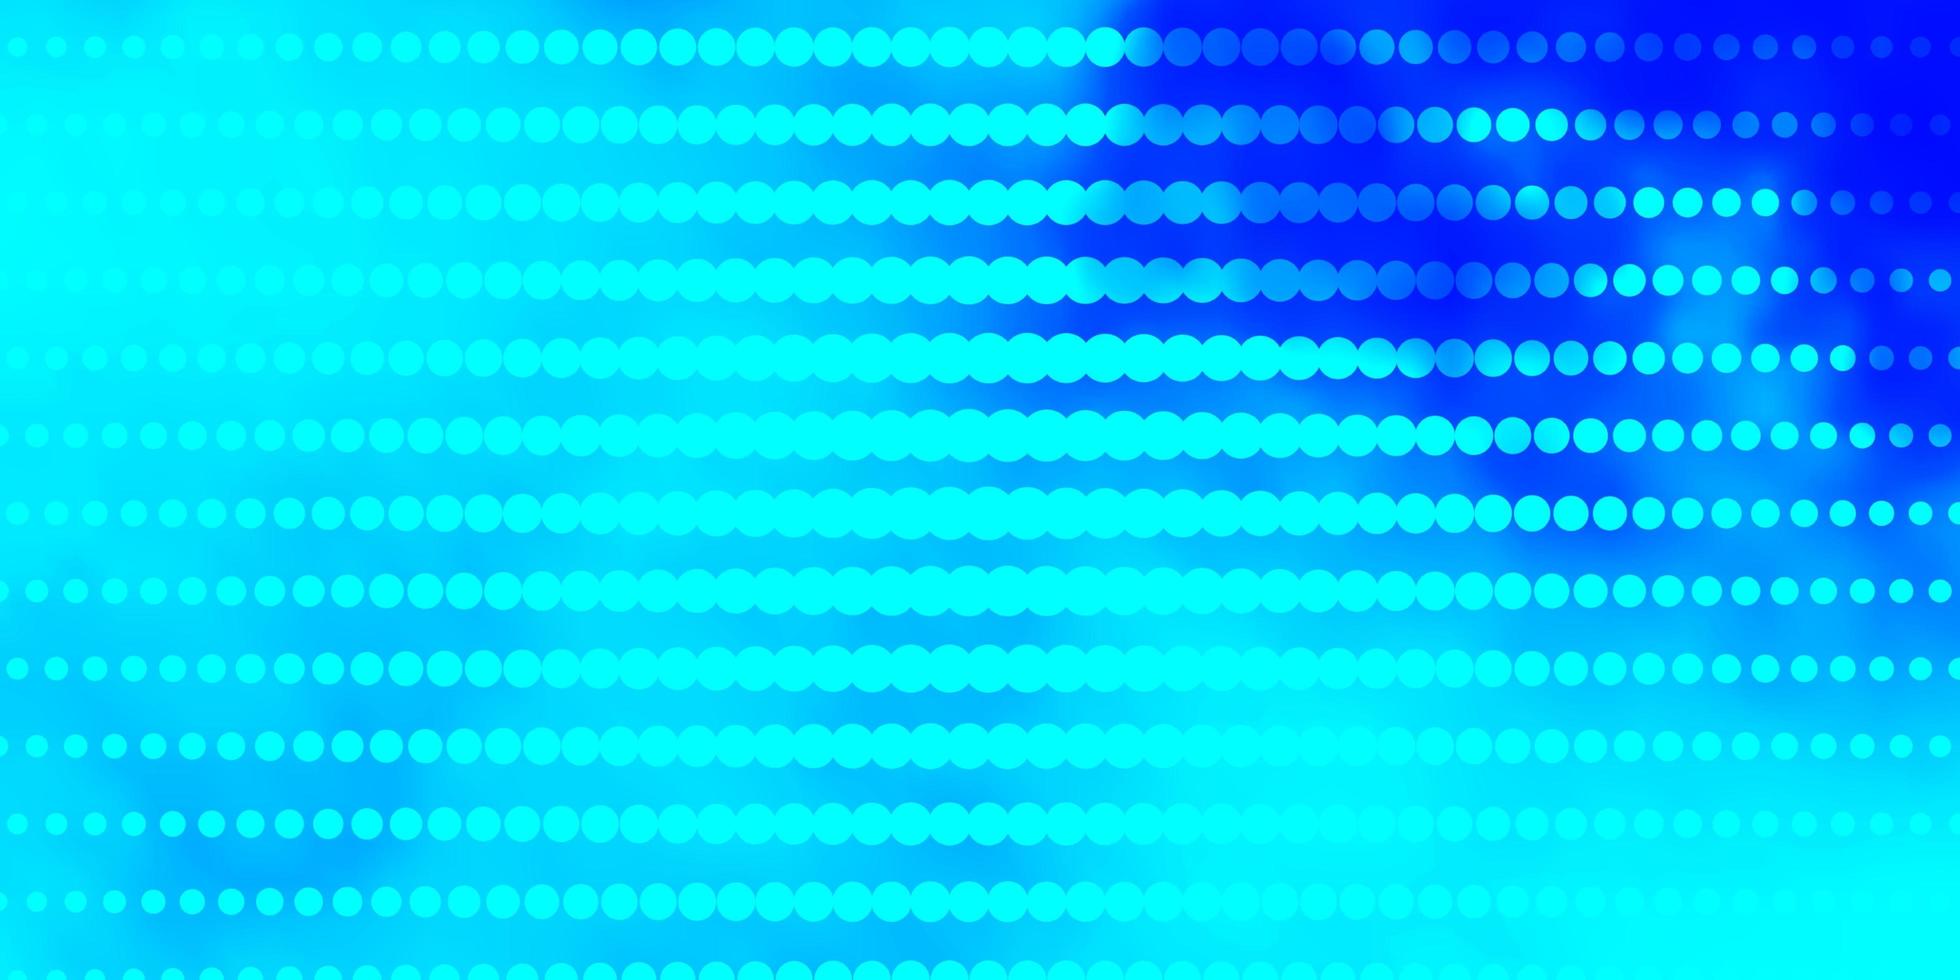 ljusrosa, blå vektorbakgrund med cirklar. vektor